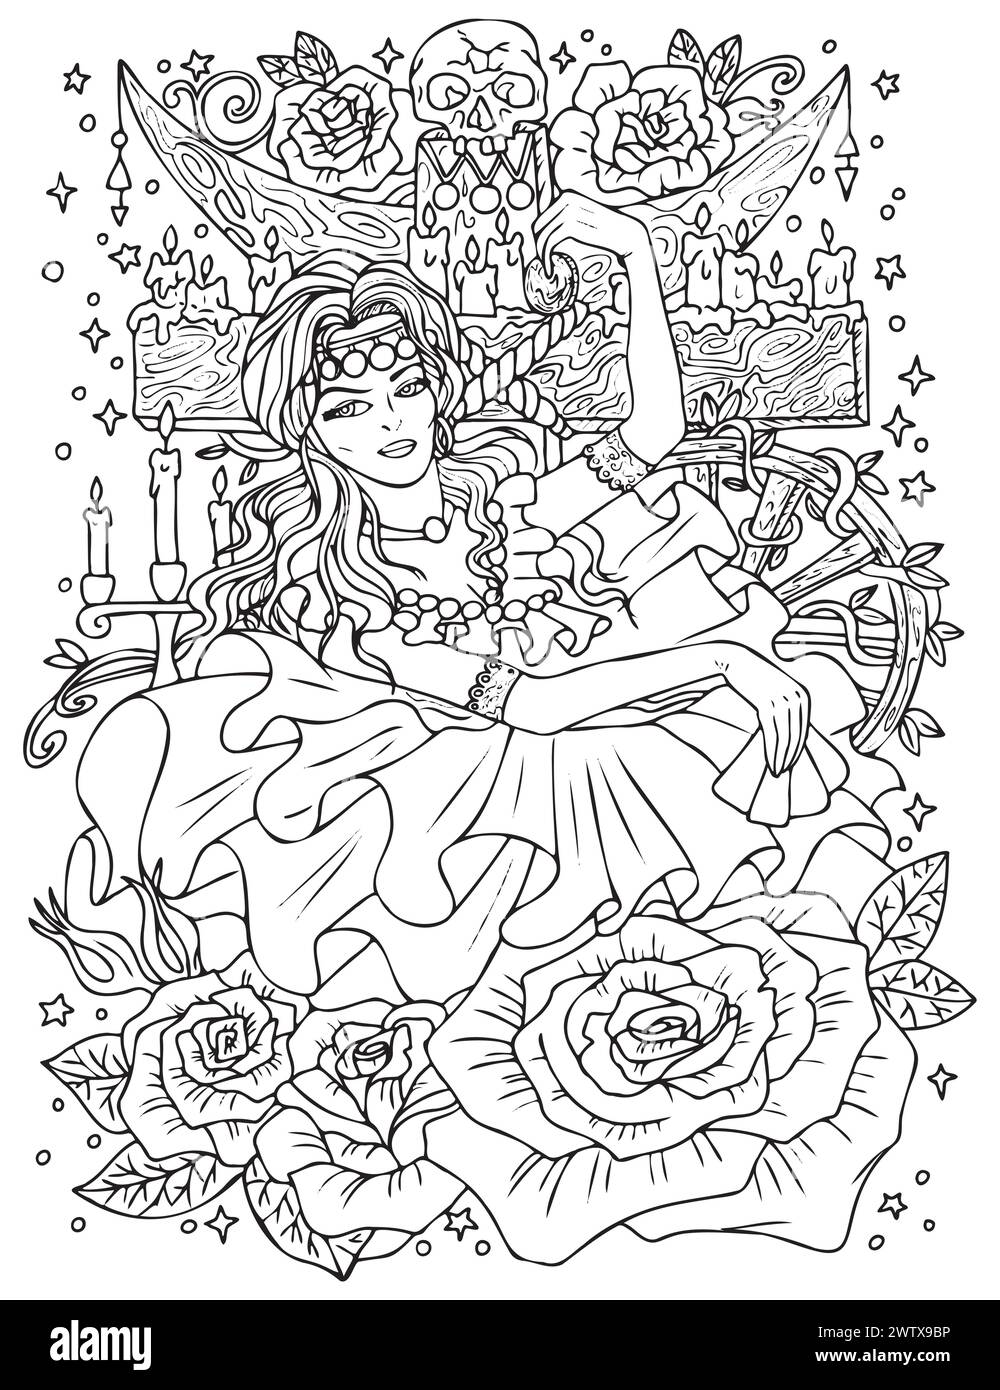 Illustration mit Fantasy-Gravur mit wunderschöner Zigeunerin als Hexe oder Magier zum Ausmalen. Handgezeichnete grafische Liniengrafik mit ethnischem Konzept als ta Stock Vektor